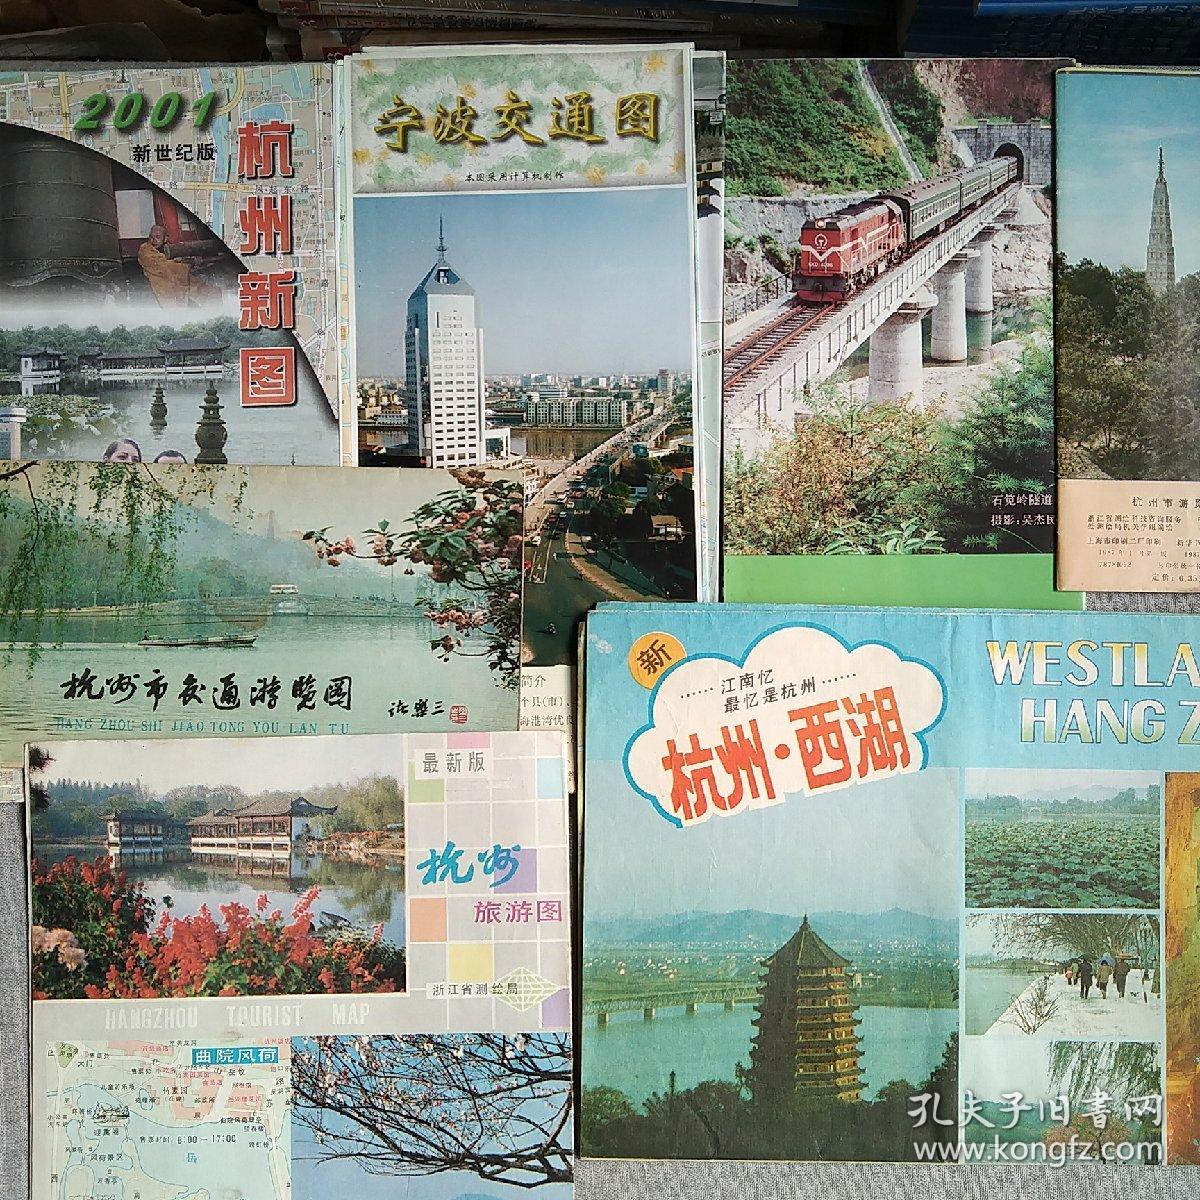 浙江部分地区 交通图 旅游图 生活便民图43张合售